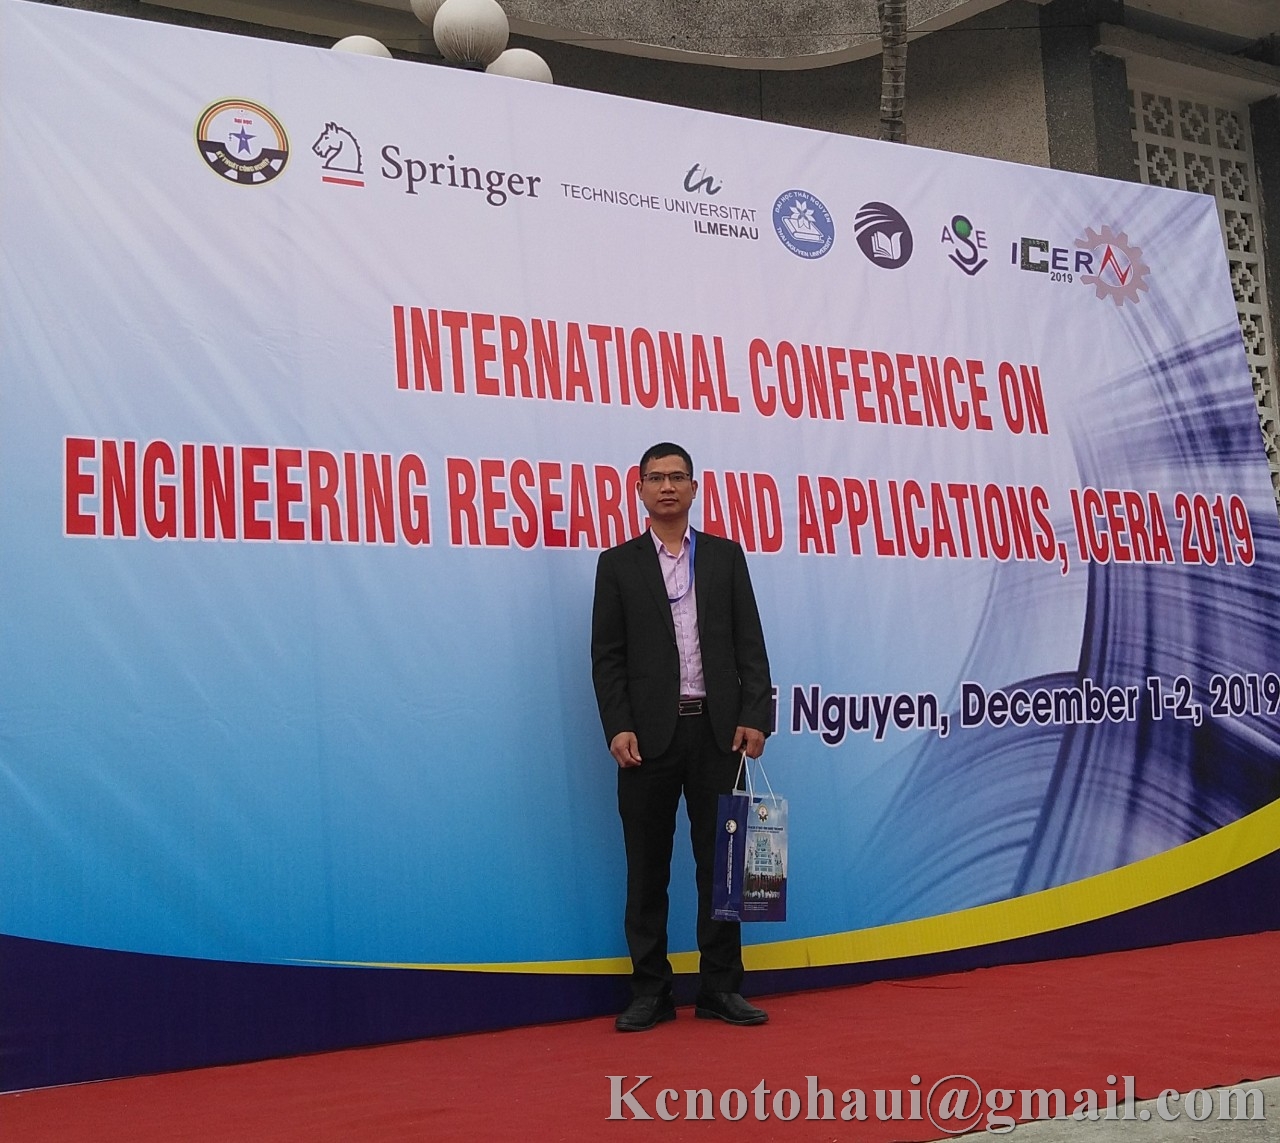 Hội nghị quốc tế về ứng dụng và nghiên cứu kỹ thuật ICERA 2019